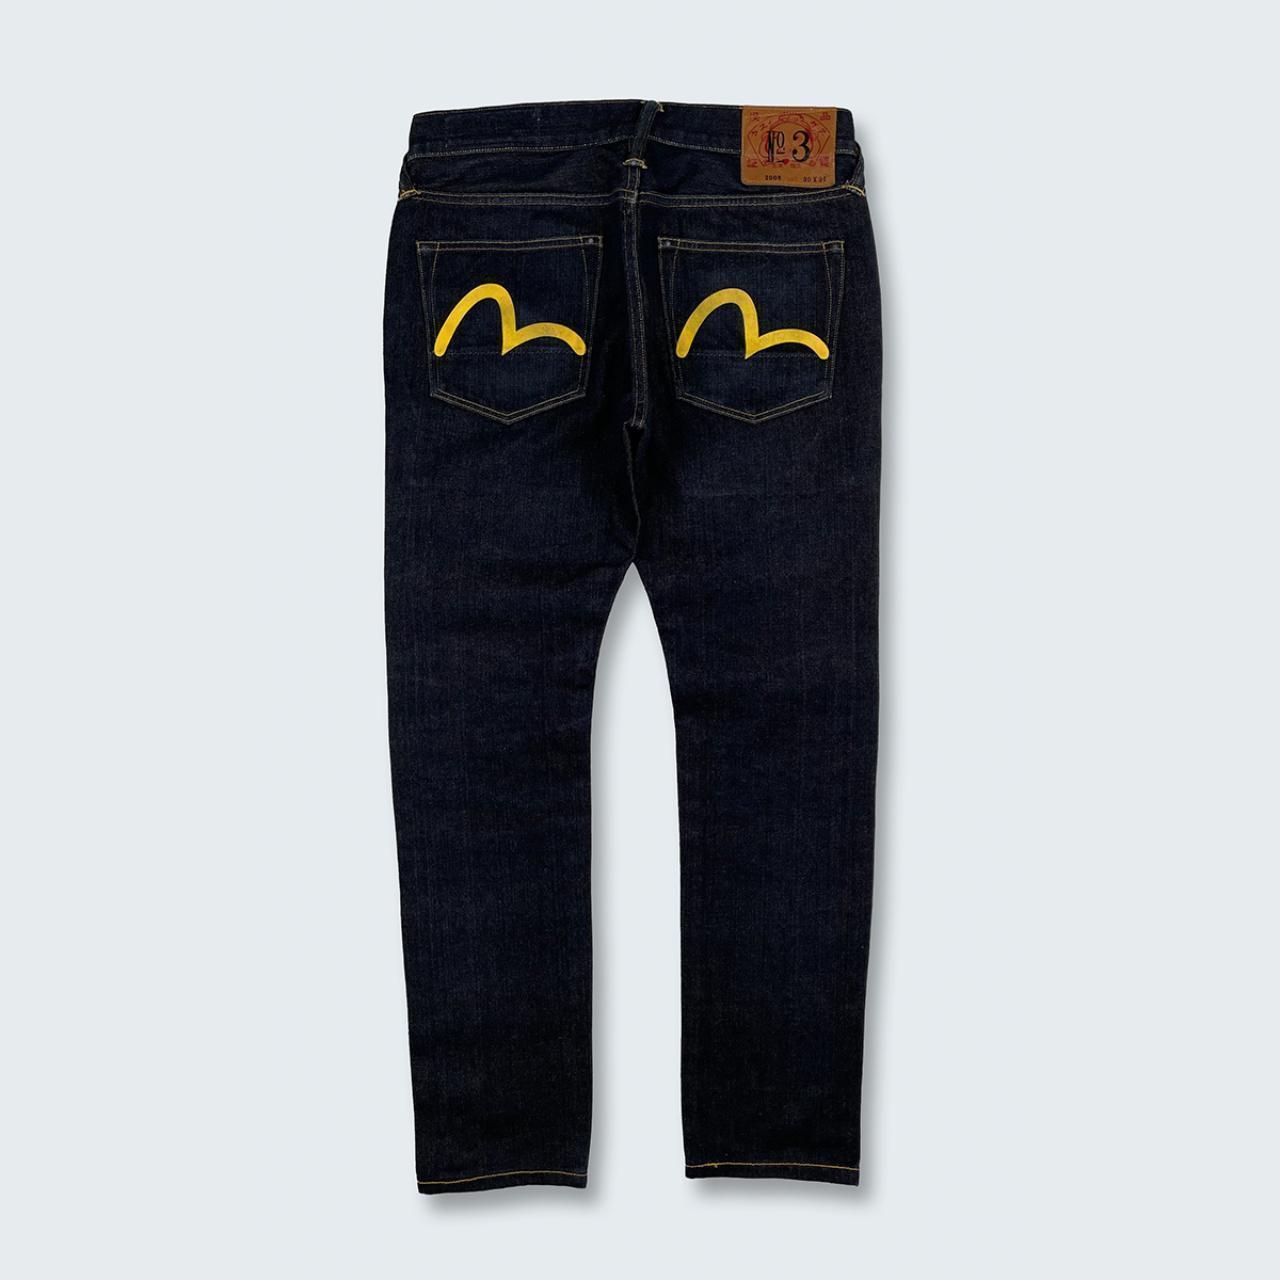 Authentic Vintage Evisu Jeans  (30")